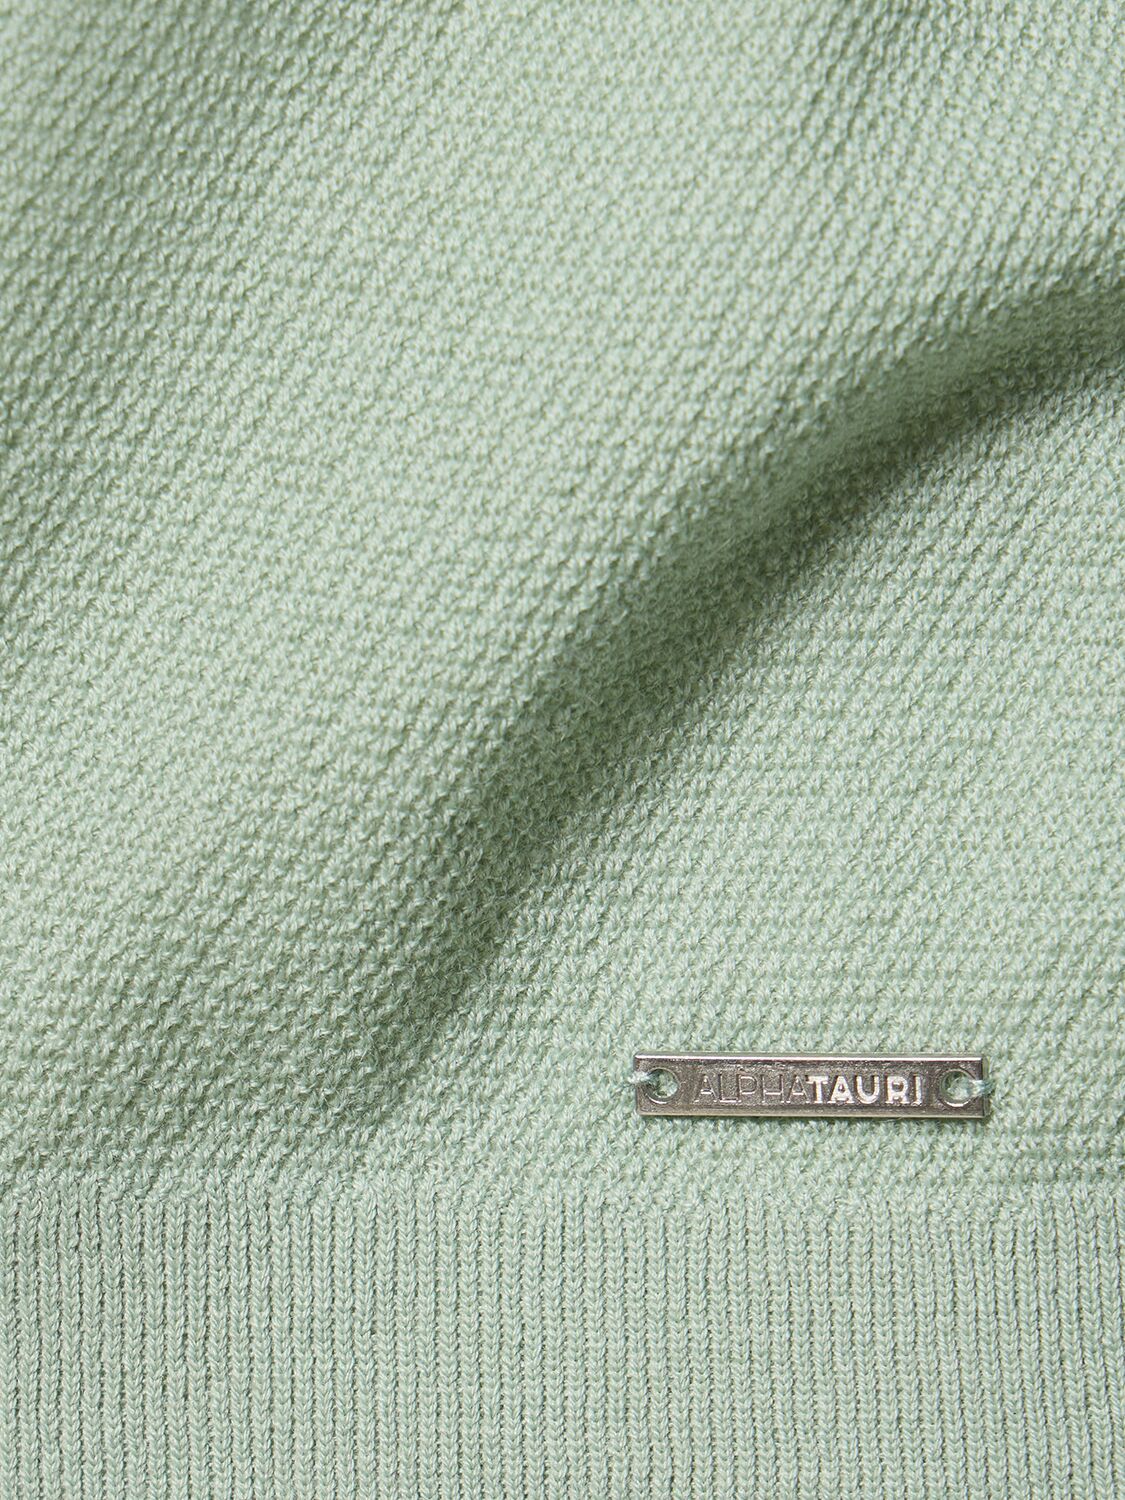 Shop Alphatauri Facas Knit Sweater In Dusty Mint